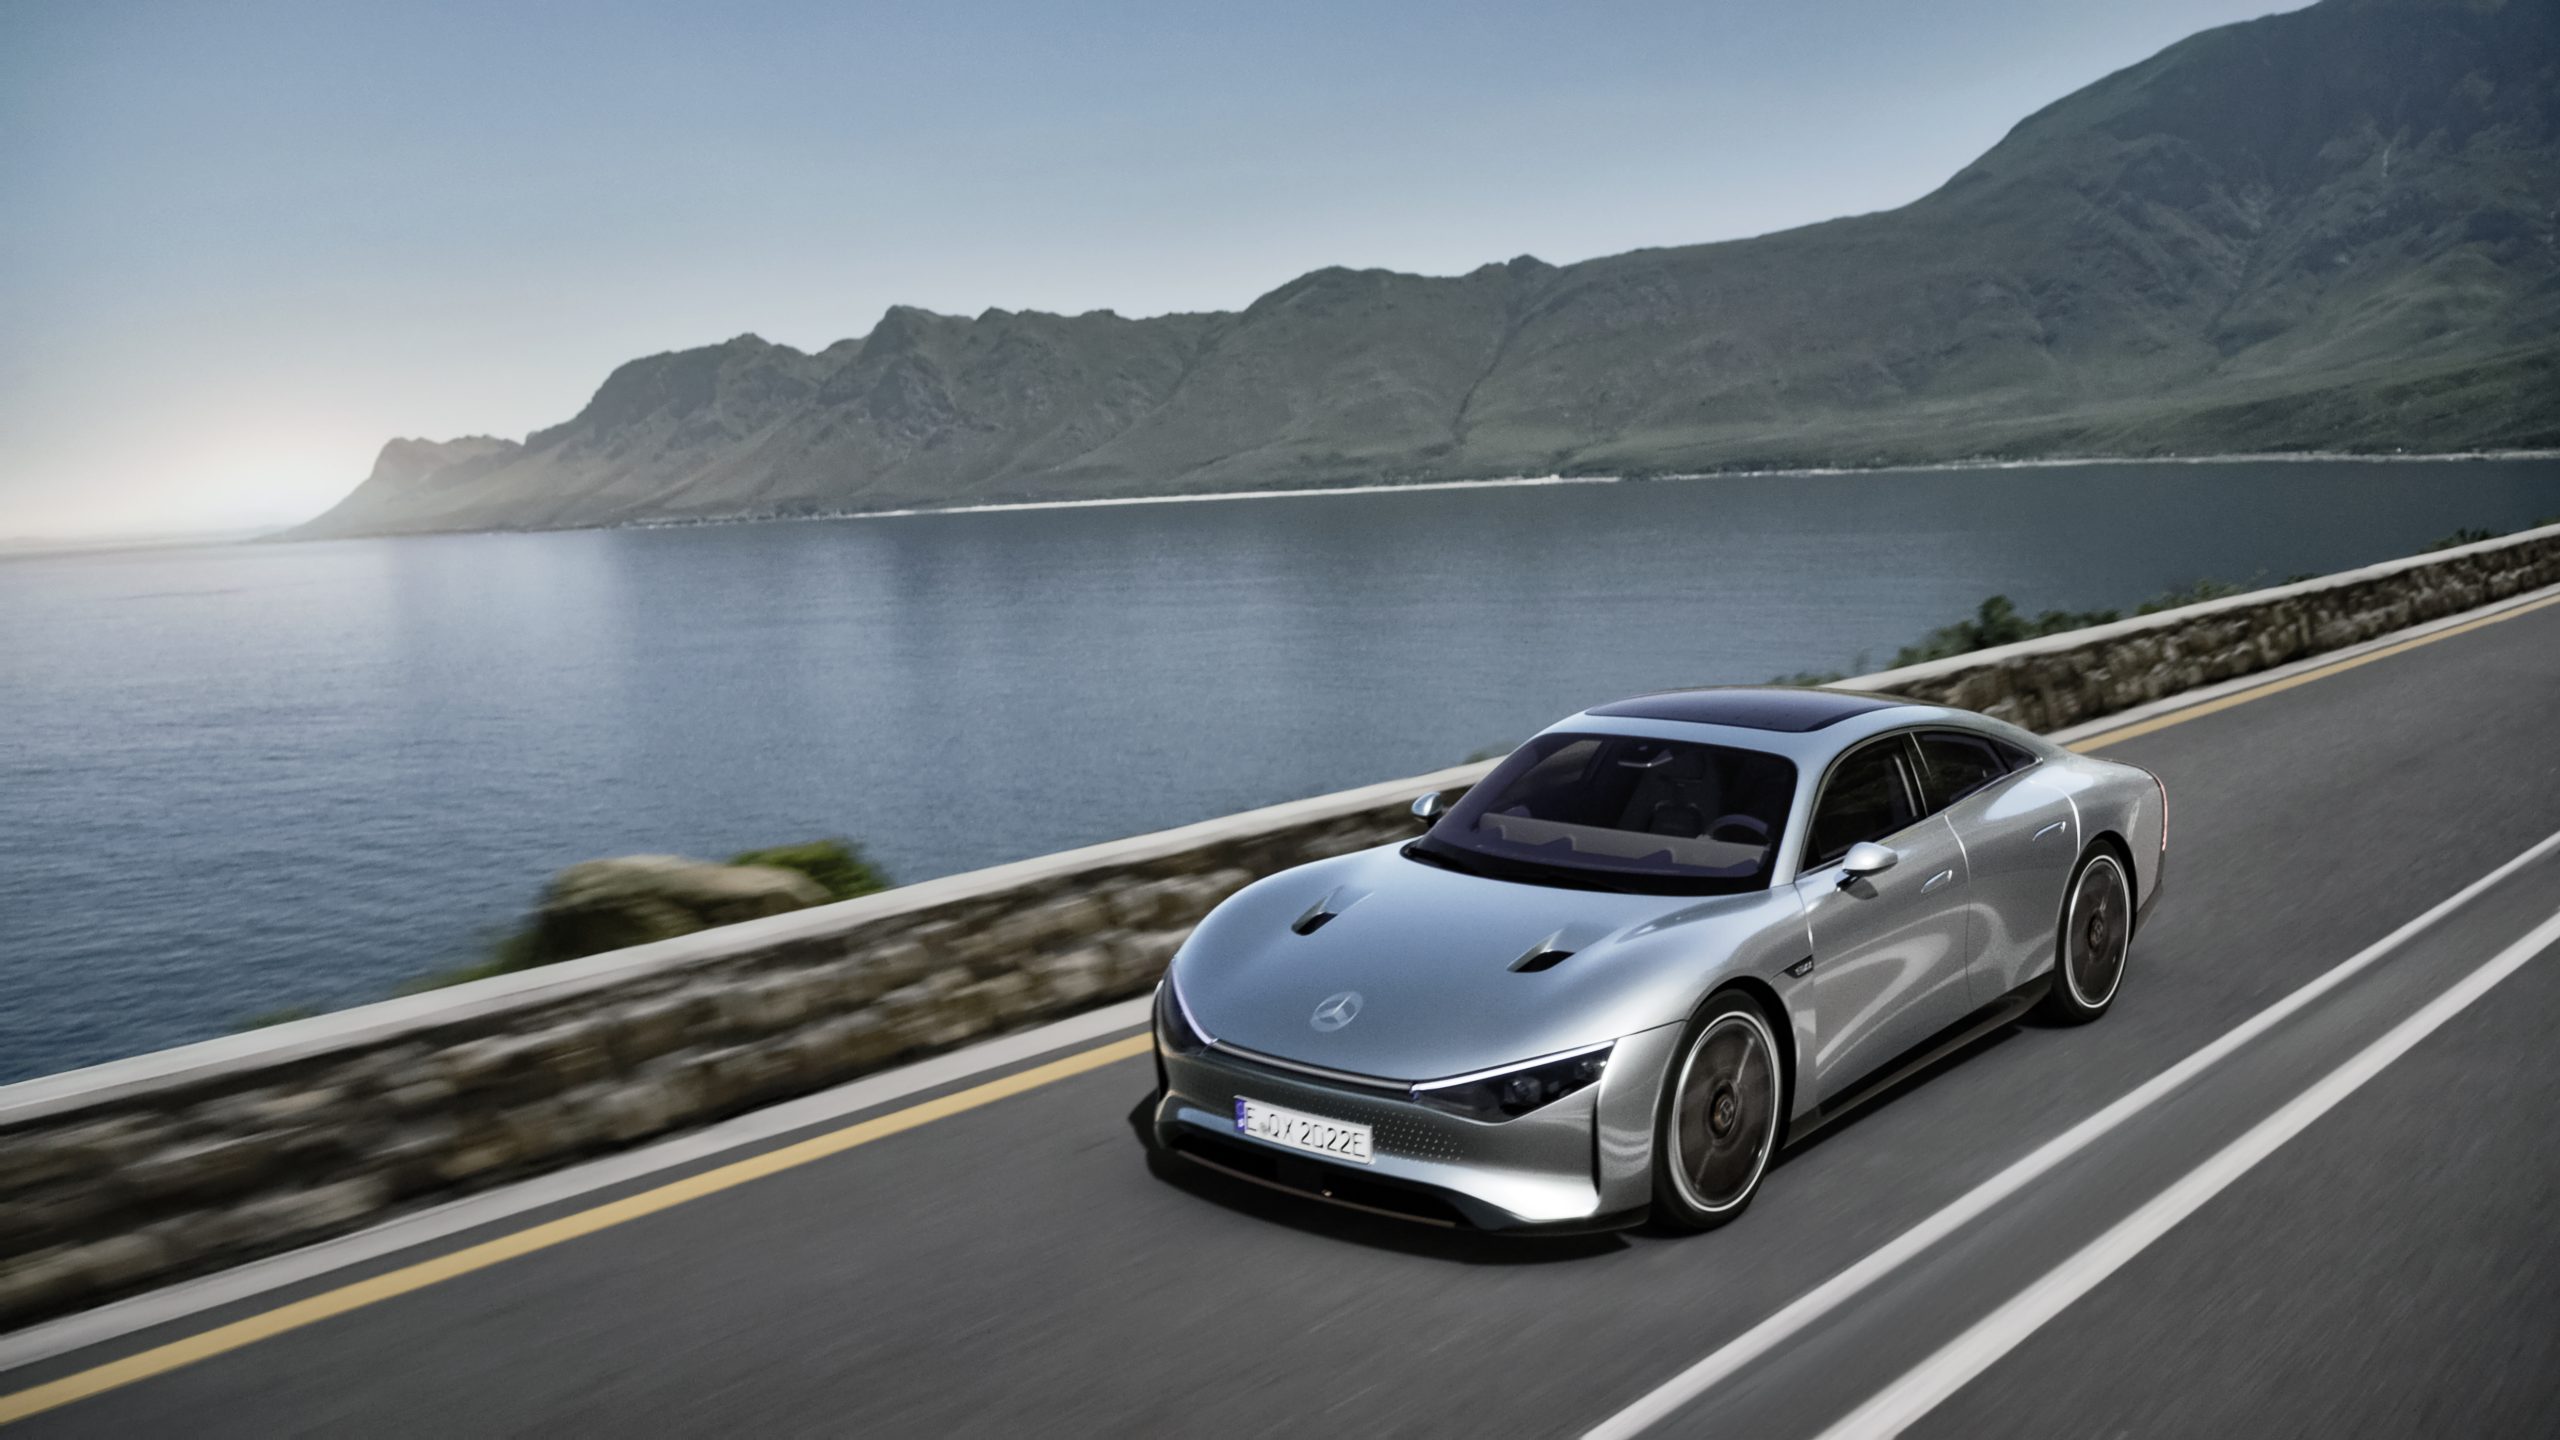 La VISION EQXX mostra come Mercedes-Benz immagina il futuro dell'auto elettrica. L'auto ha un'autonomia di più di 1.000 chilometri e un consumo di energia inferiore a 10 kWh per 100 chilometri. La VISION EQXX è sinonimo di nuovi standard in termini di efficienza energetica e autonomia nel traffico stradale reale, nonché di uno sviluppo rivoluzionario delle auto elettriche. // La VISION EQXX è il modo in cui Mercedes-Benz immagina il futuro delle auto elettriche. L'auto ha un'autonomia di più di 1.000 chilometri con un consumo energetico eccezionale di meno di 10 kWh per 100 chilometri. La VISION EQXX è sinonimo di grandi progressi: stabilisce nuovi standard in termini di efficienza energetica e di autonomia nel traffico reale e rivoluziona lo sviluppo delle auto elettriche